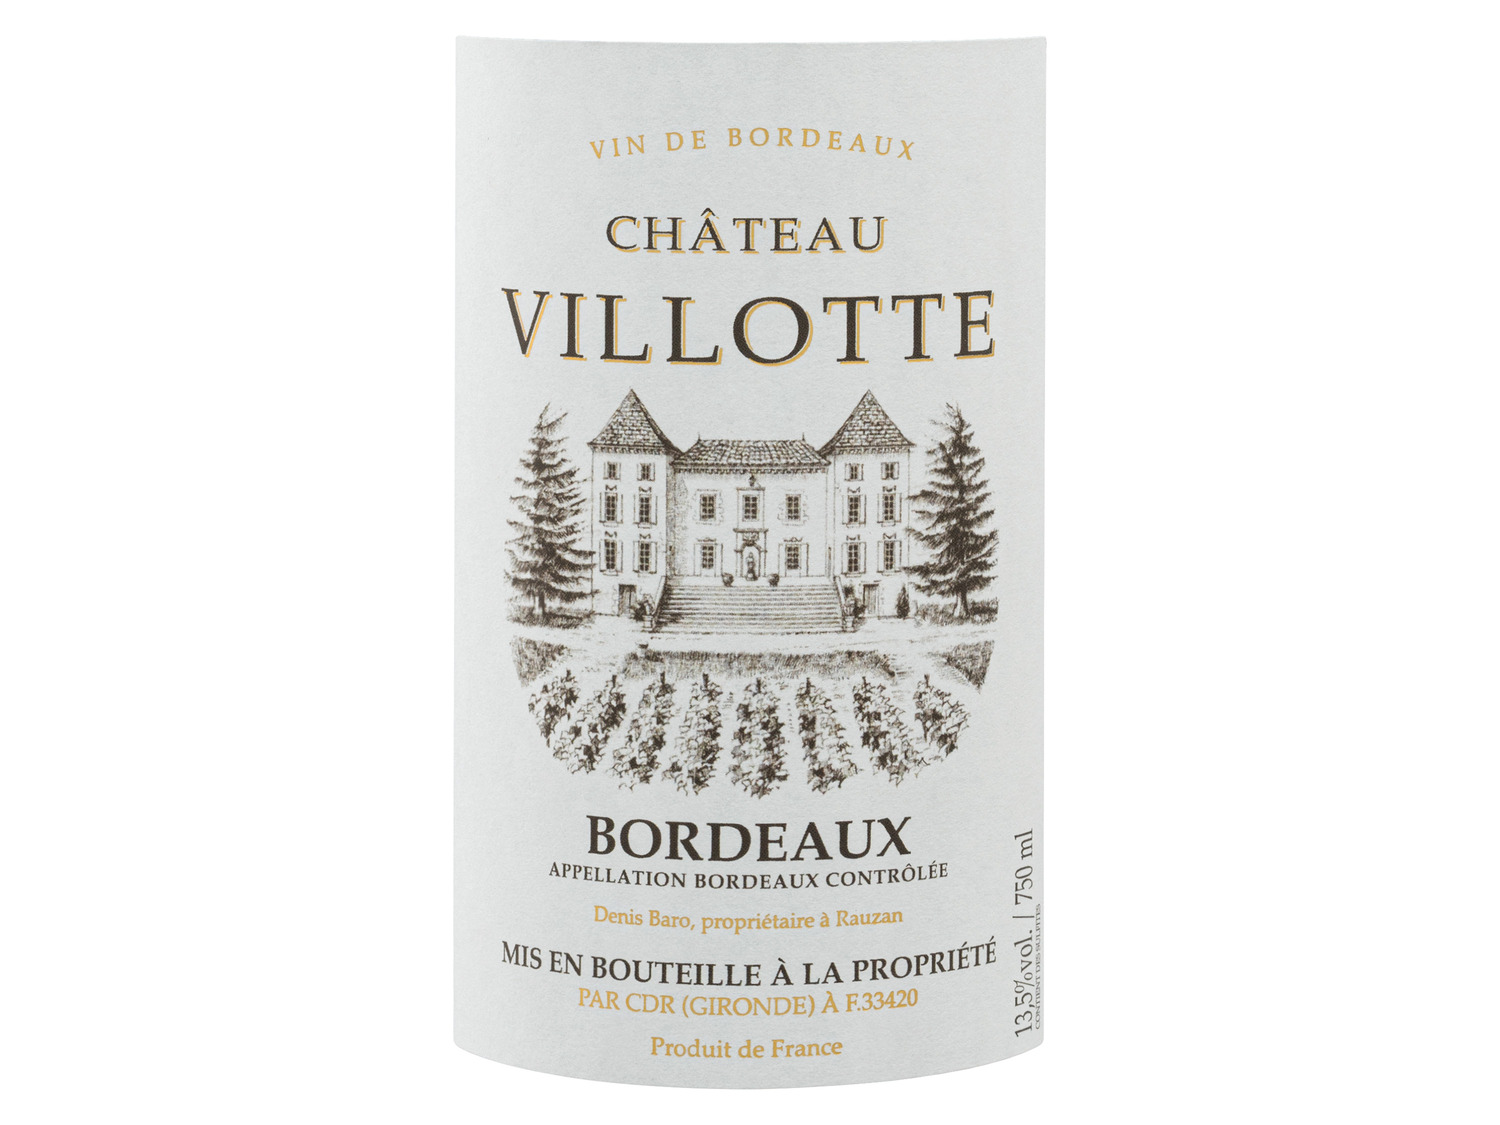 ᐉ Sansibar Deluxe Château Villotte Bordeaux AOC trocken, Rotwein 2020 / DE  / Price Compare - Lidl